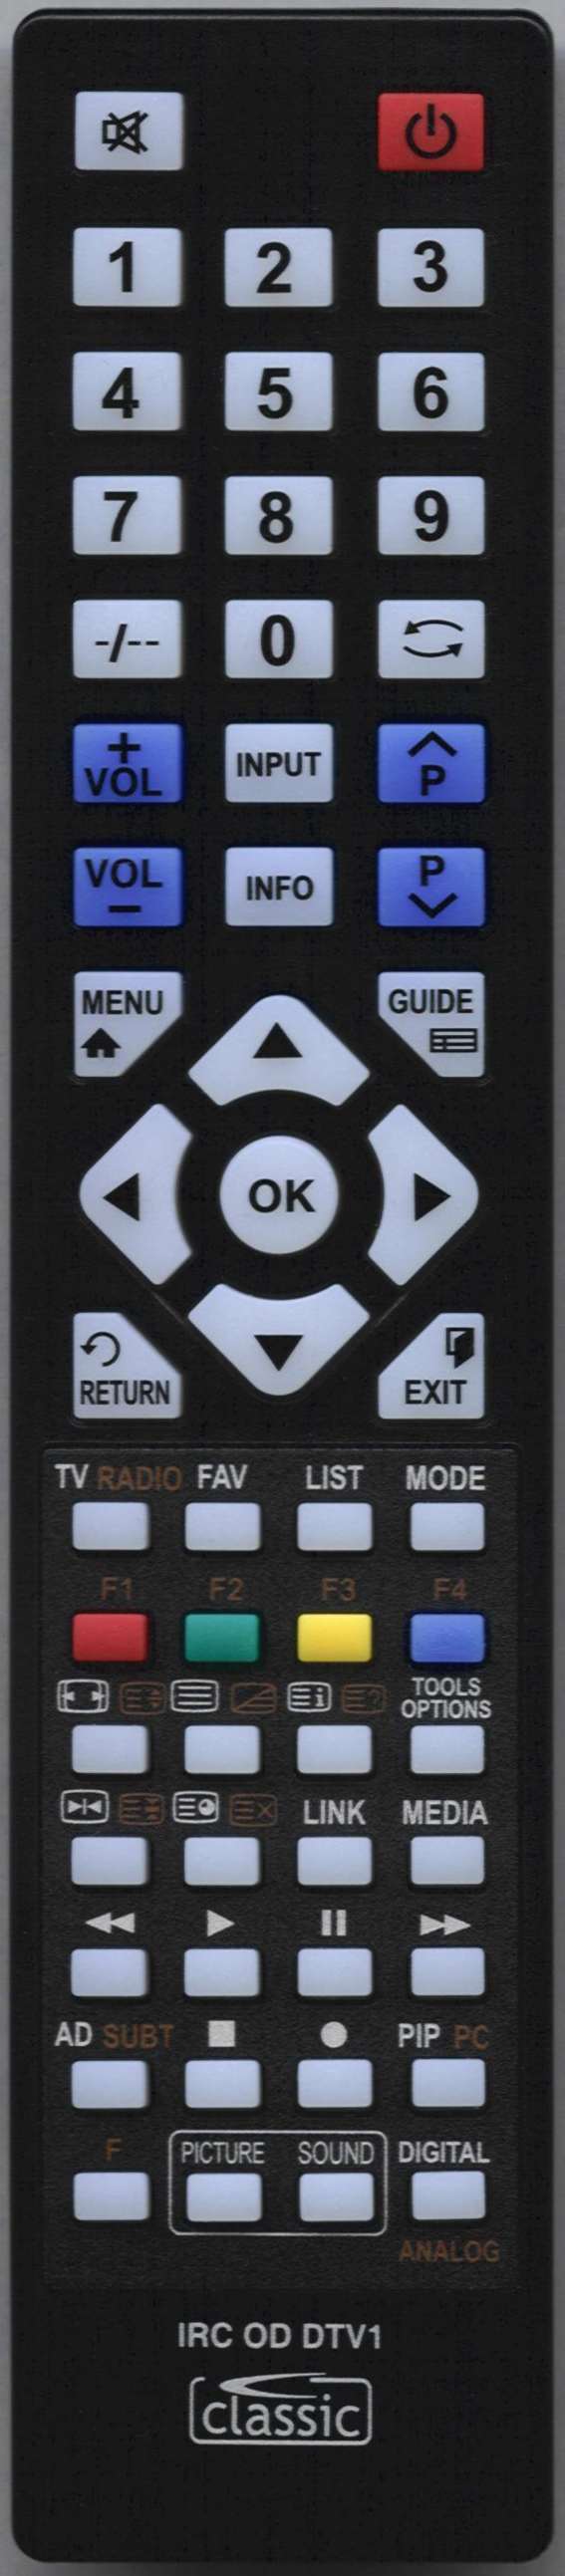 TOSHIBA 40XV551D Remote Control Alternative